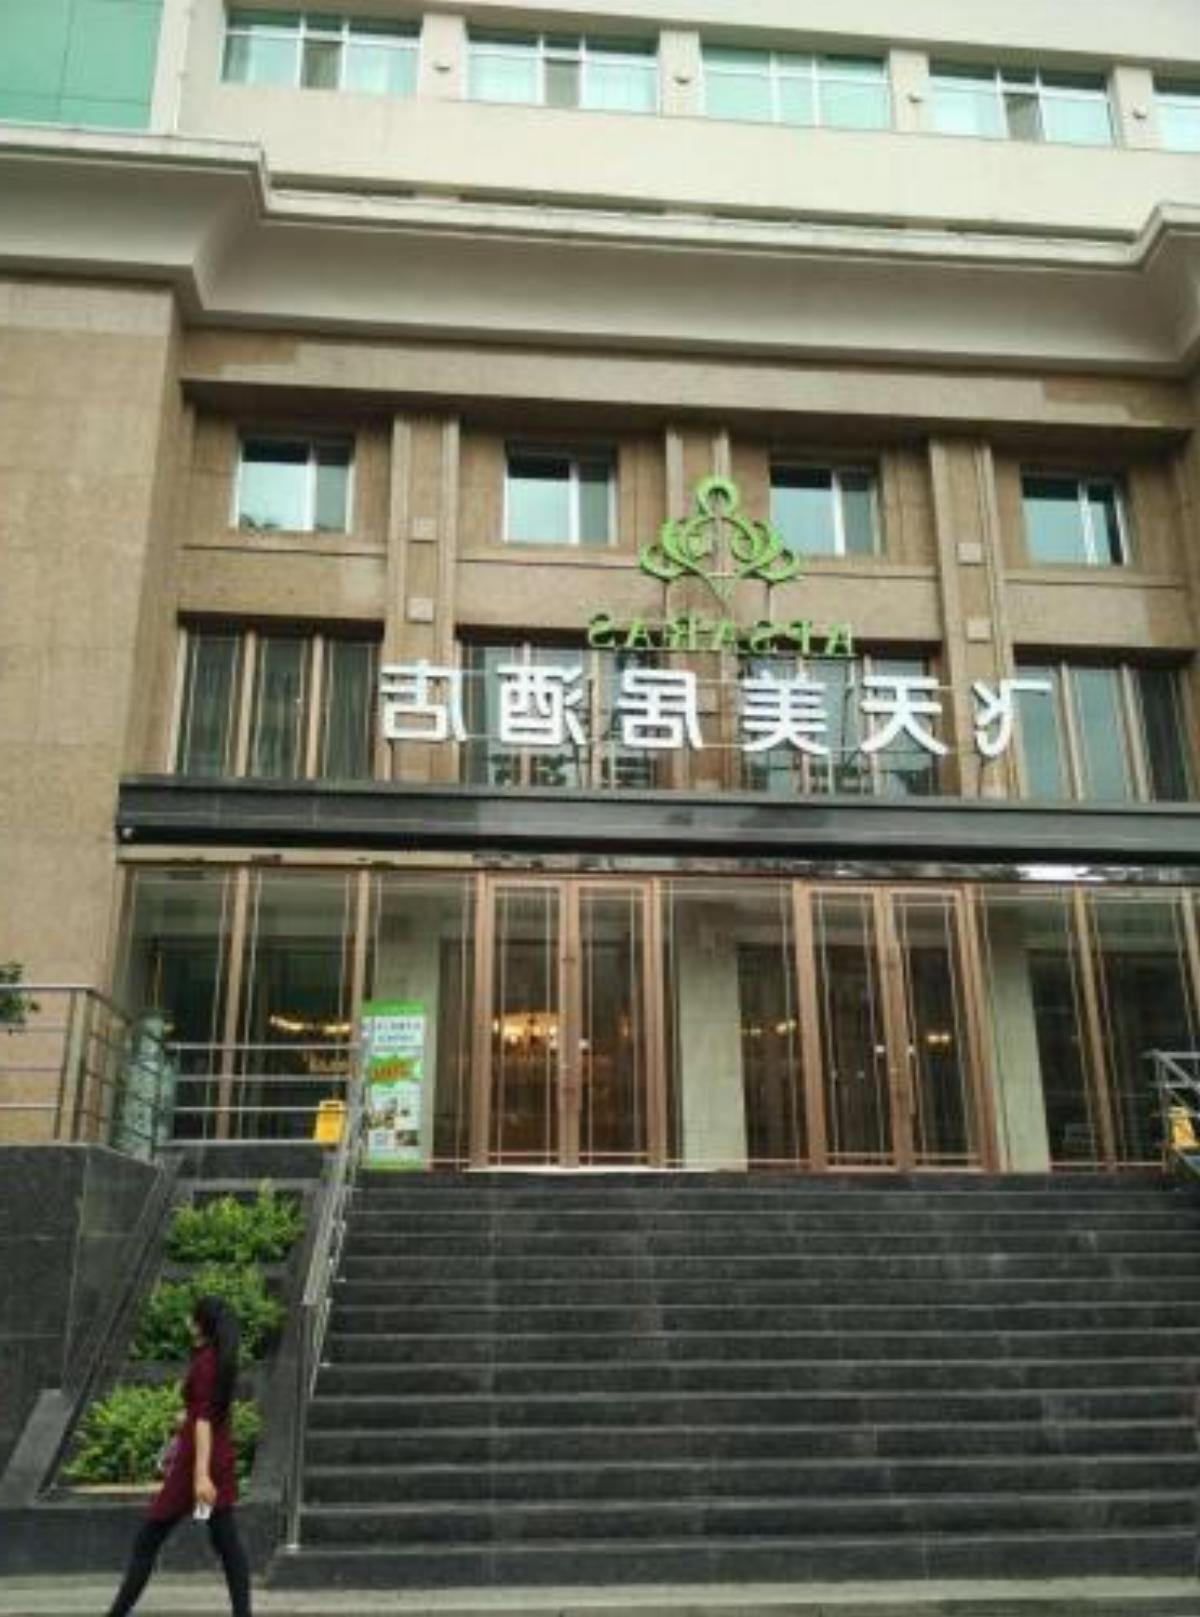 Feitian Meiju Hotel Baiyin Road Branch Hotel Lanzhou China